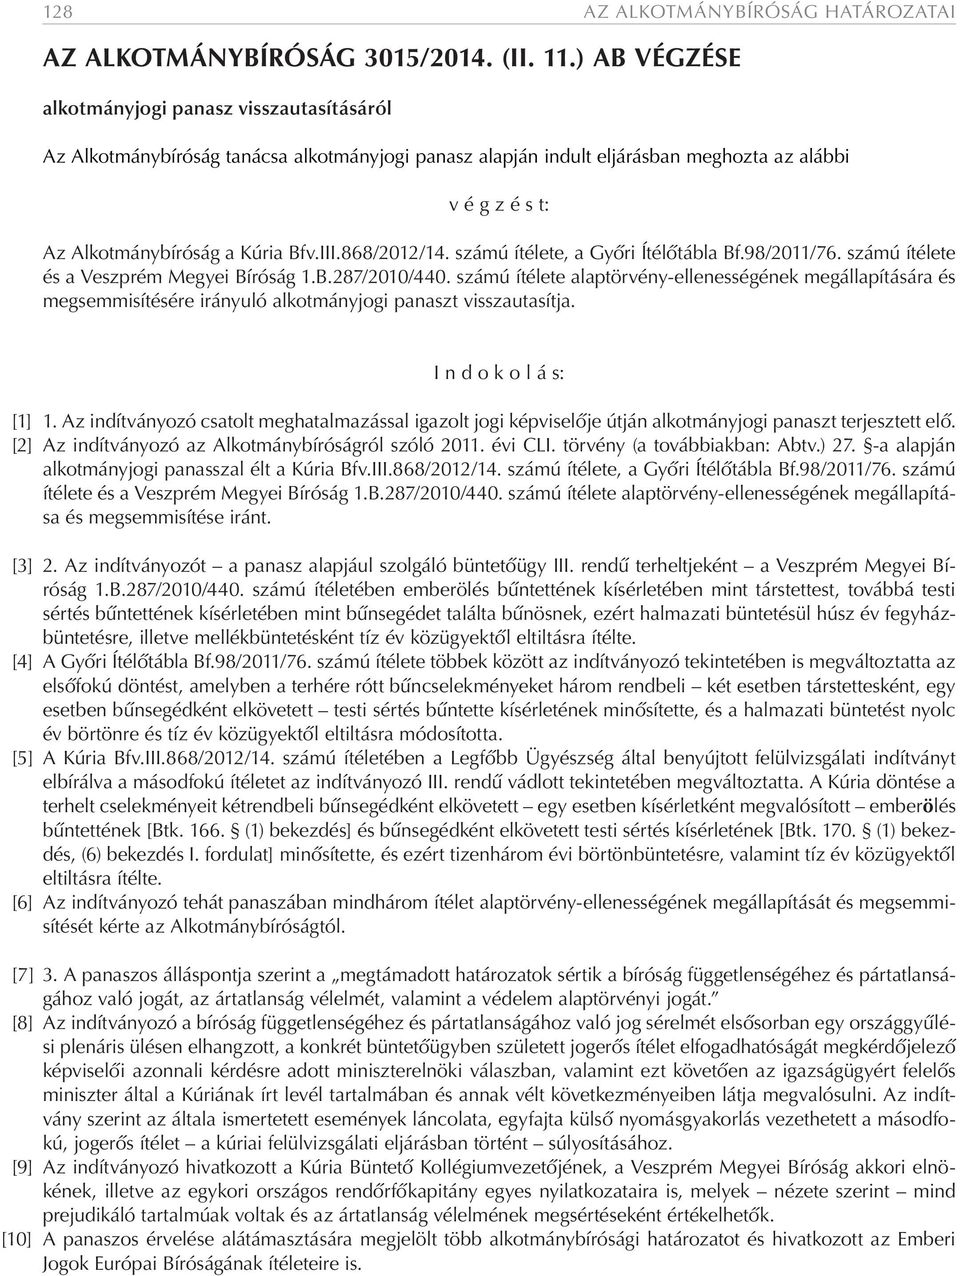 868/2012/14. számú ítélete, a Győri Ítélőtábla Bf.98/2011/76. számú ítélete és a Veszprém Megyei Bíróság 1.B.287/2010/440.